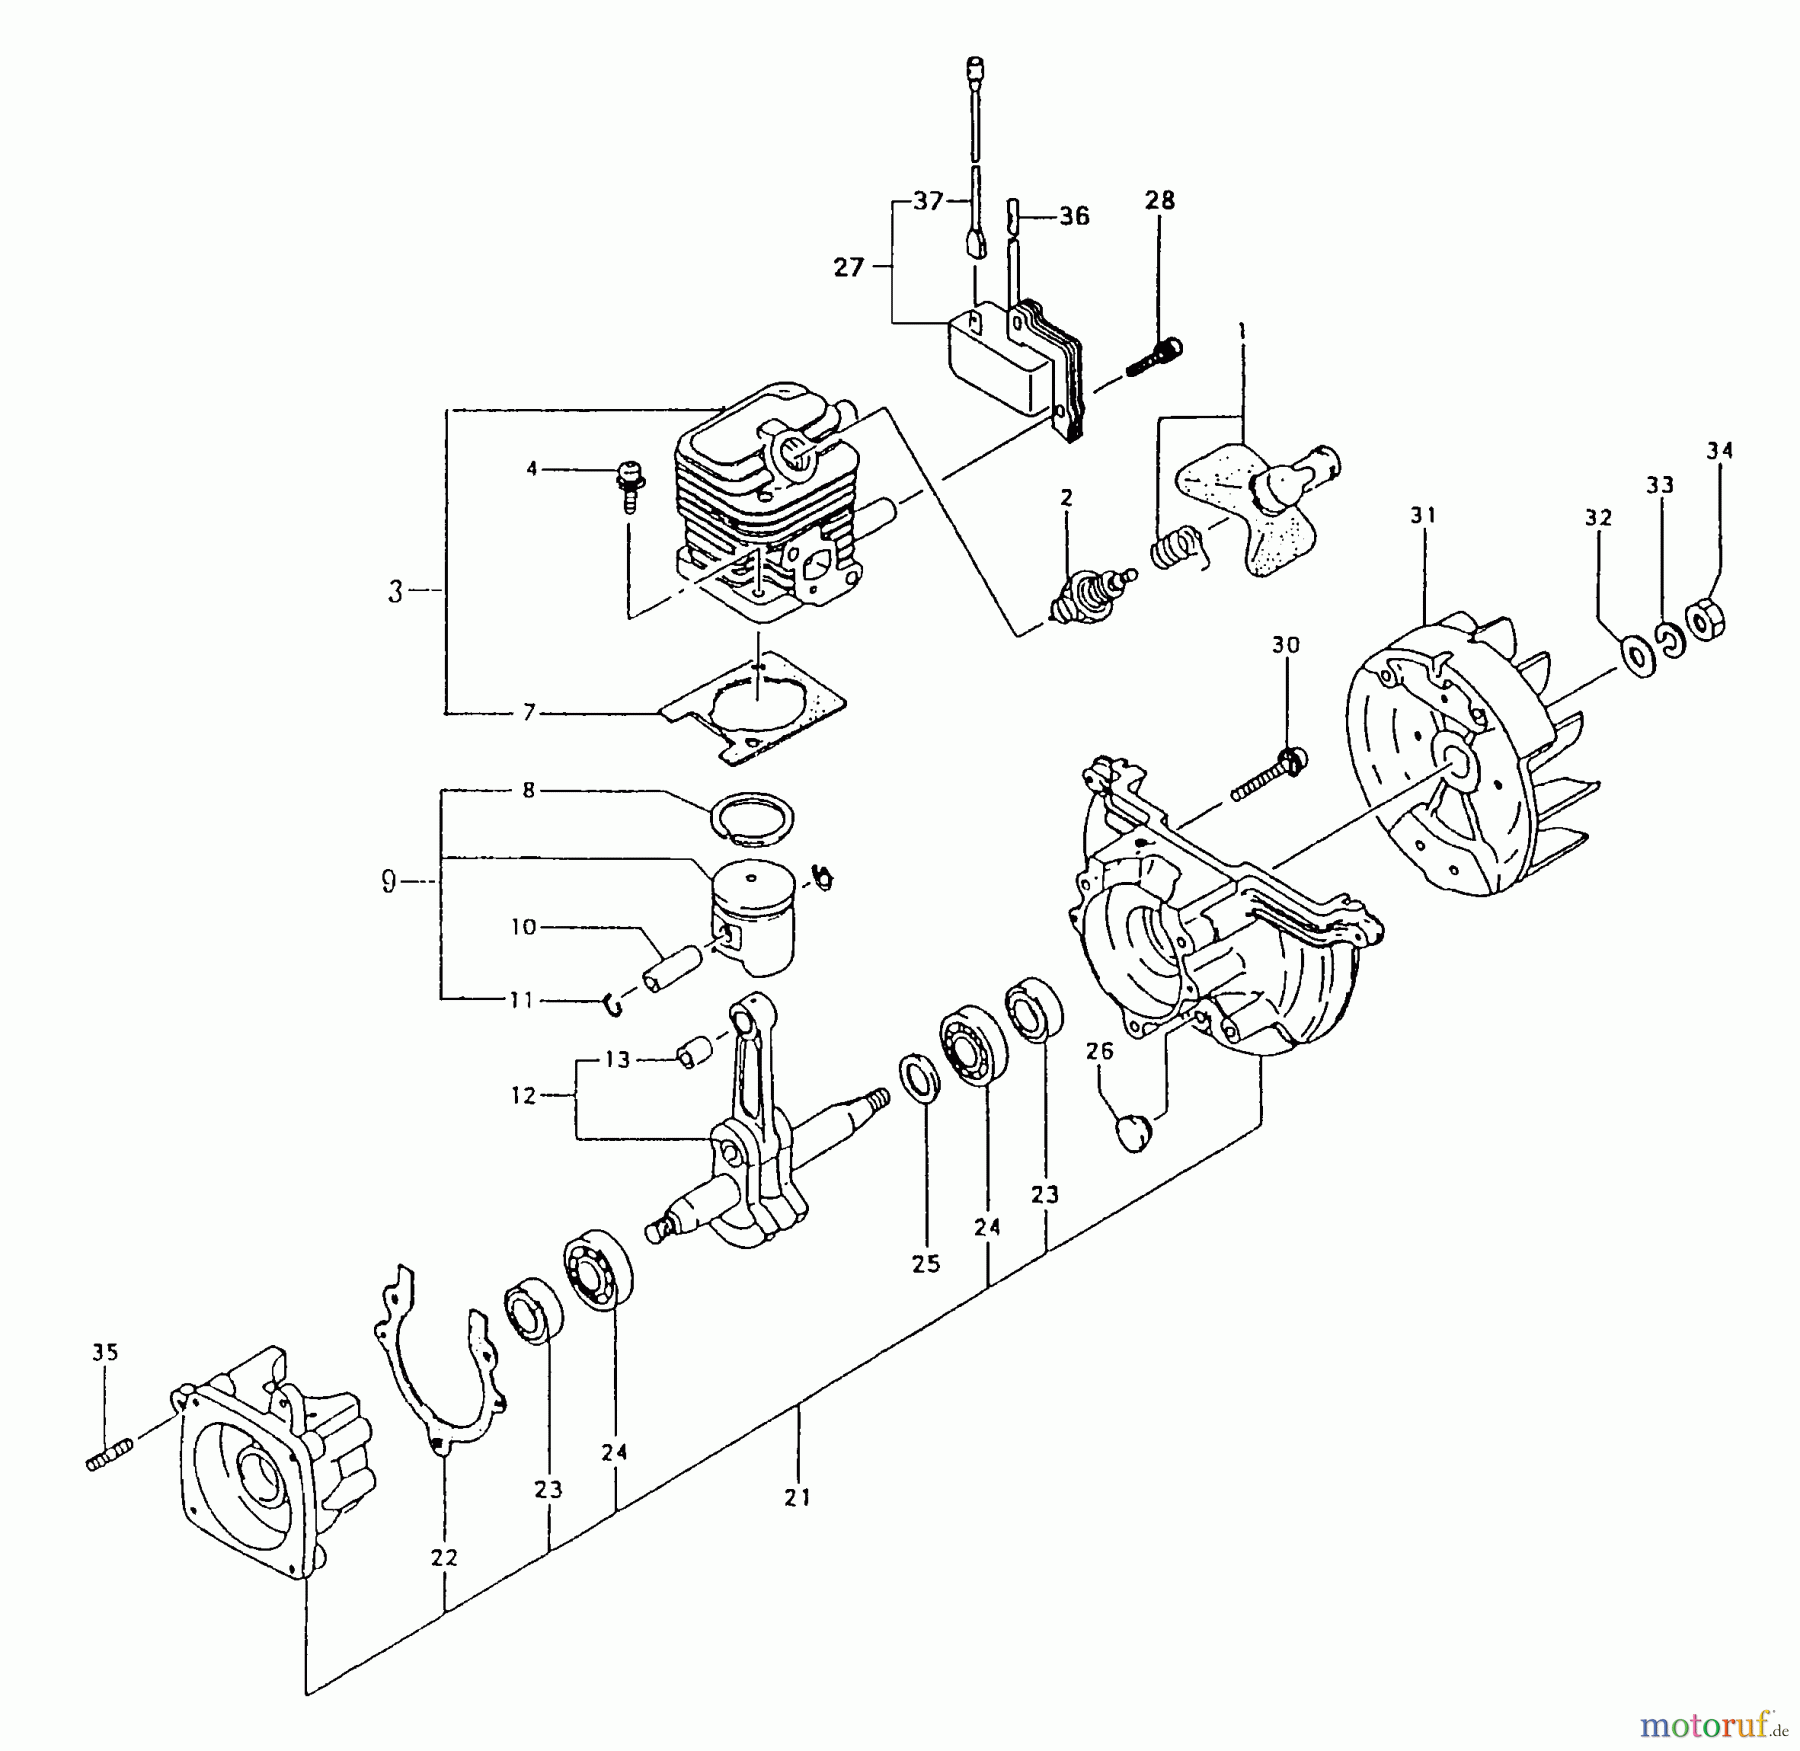  Tanaka Heckenscheeren THT-2100 - Tanaka Hedge Trimmer Engine / Cylinder, Piston, Crankshaft